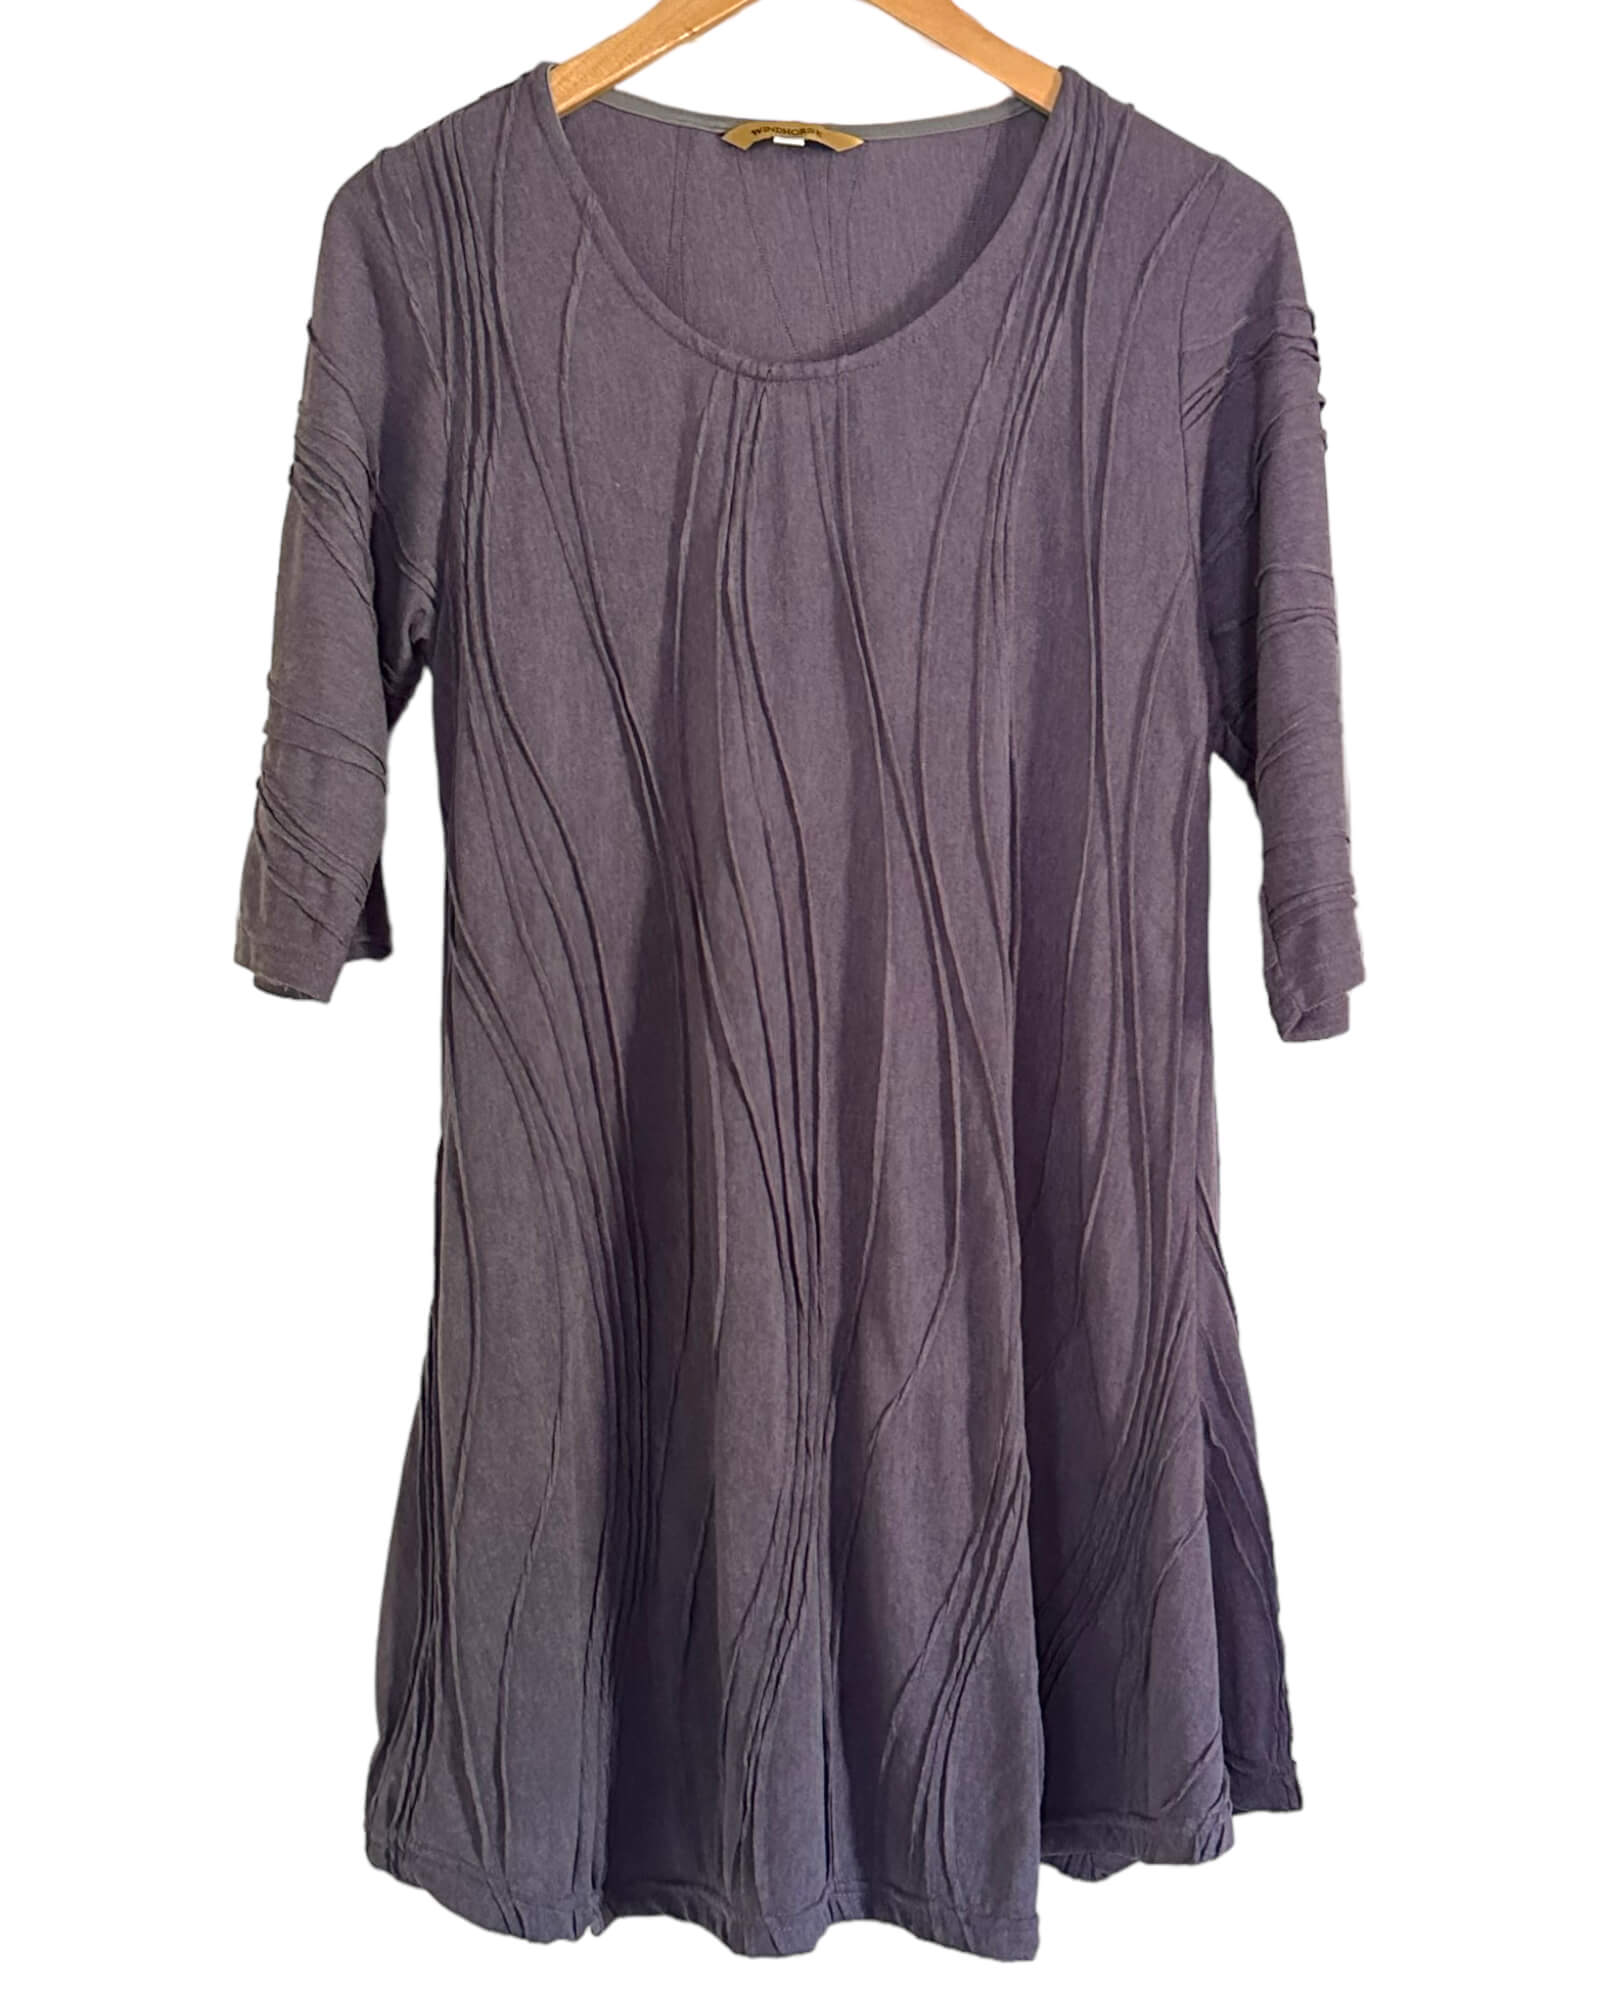 J. Jill Purple Pin tuck Linen Maxi Dress  Linen maxi dress, Jill dress,  Maxi dress